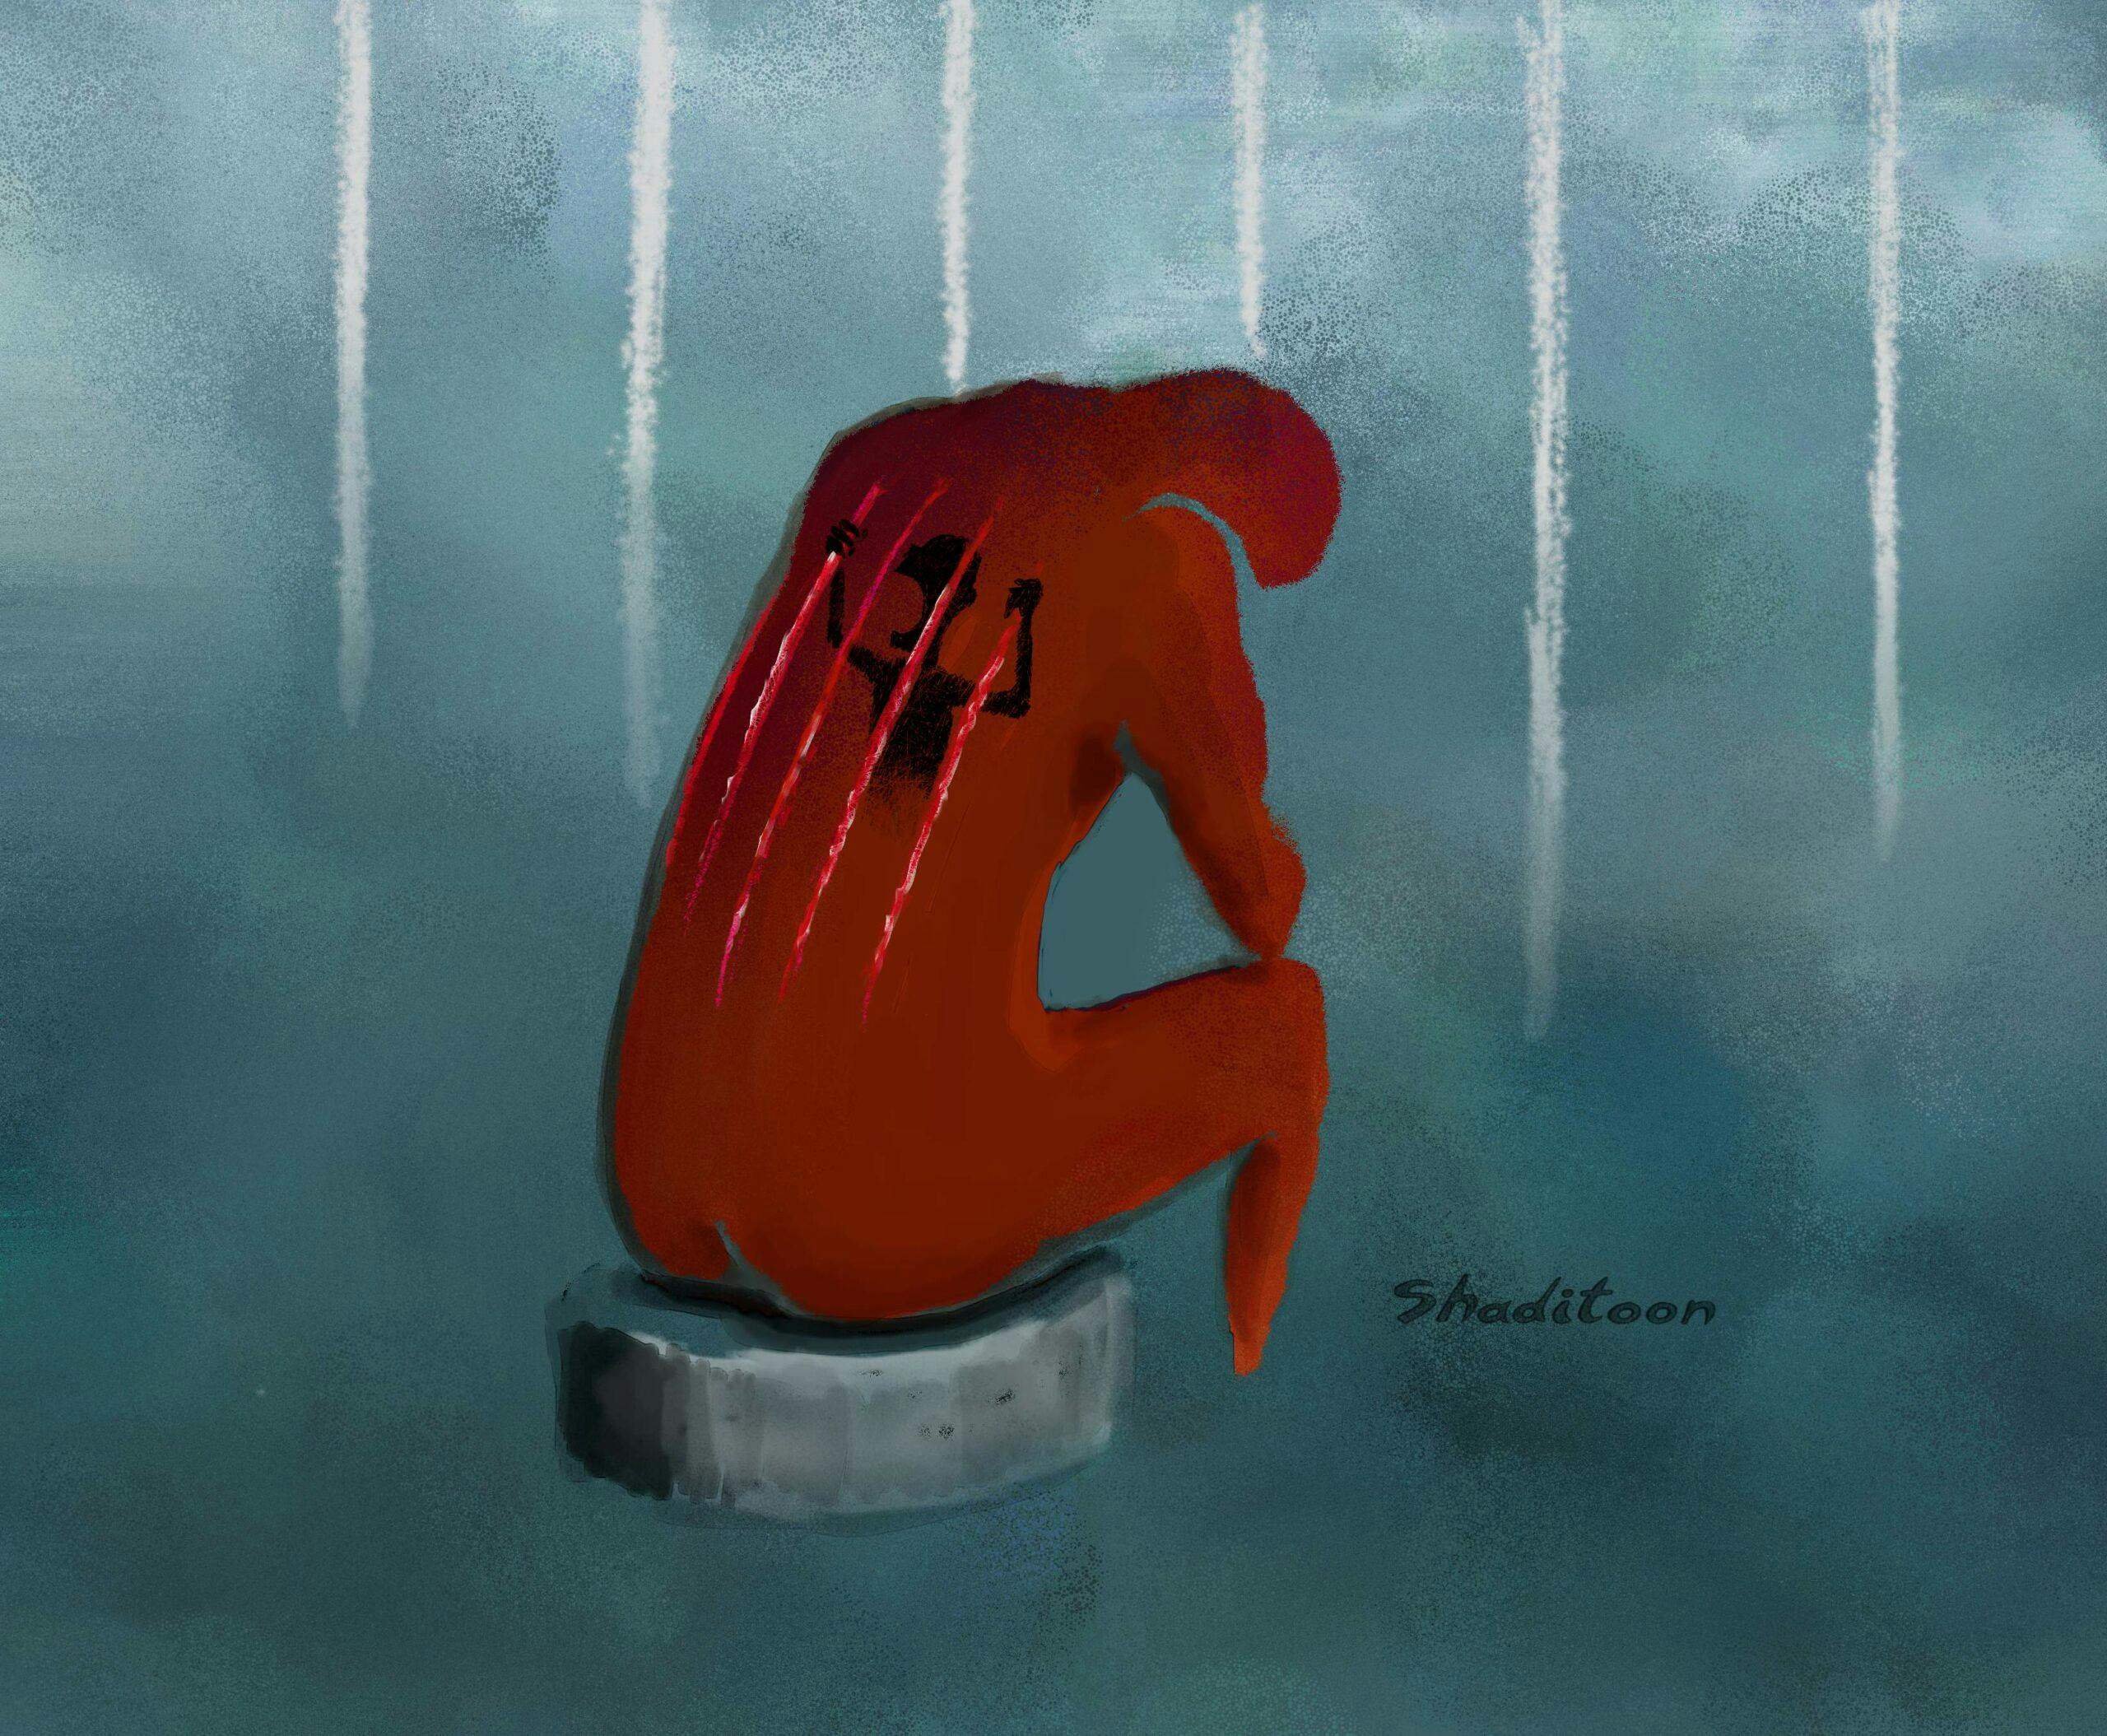 کارتونی از یک قربانی شکنجه در زندان پشت به تصویر